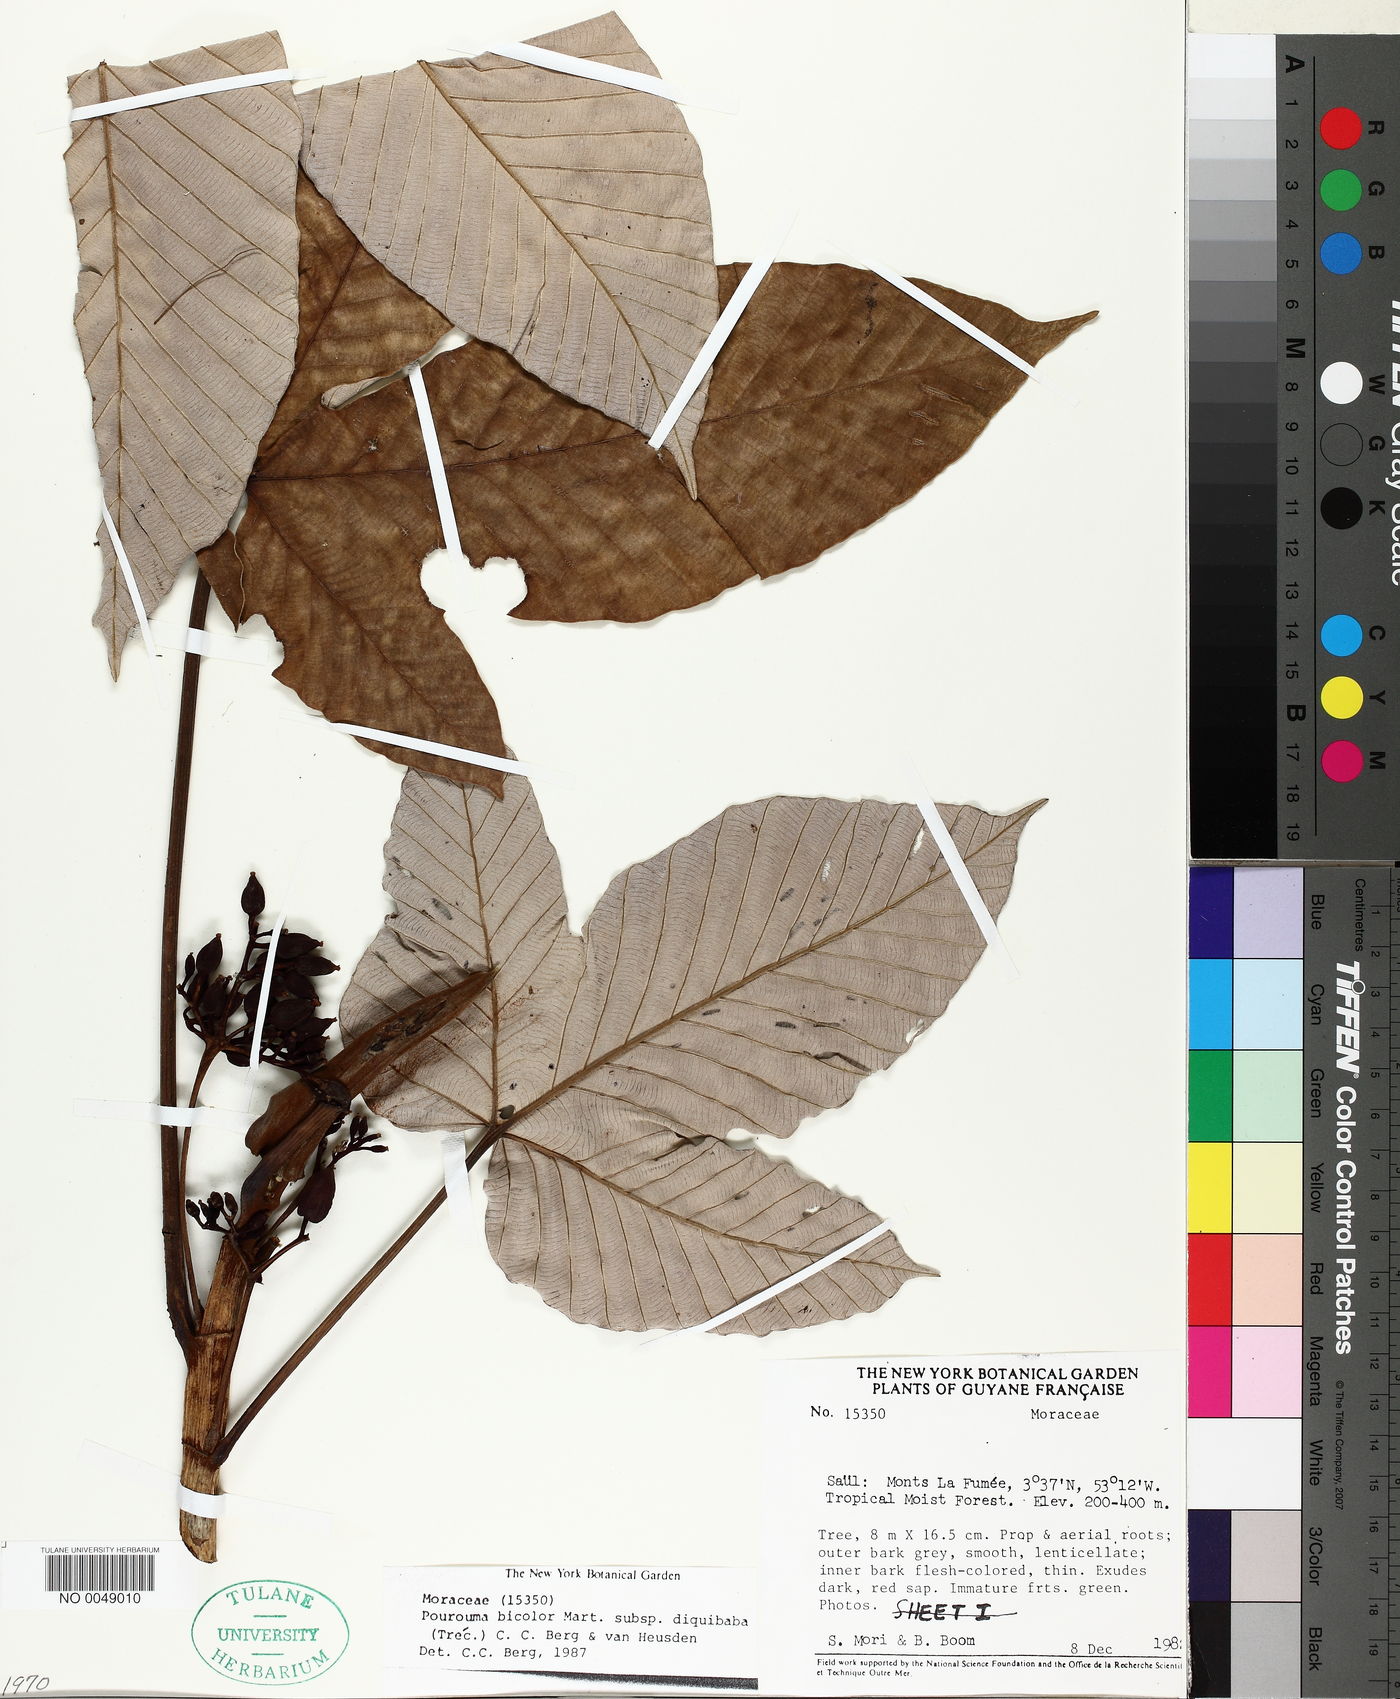 Pourouma bicolor subsp. digitata image